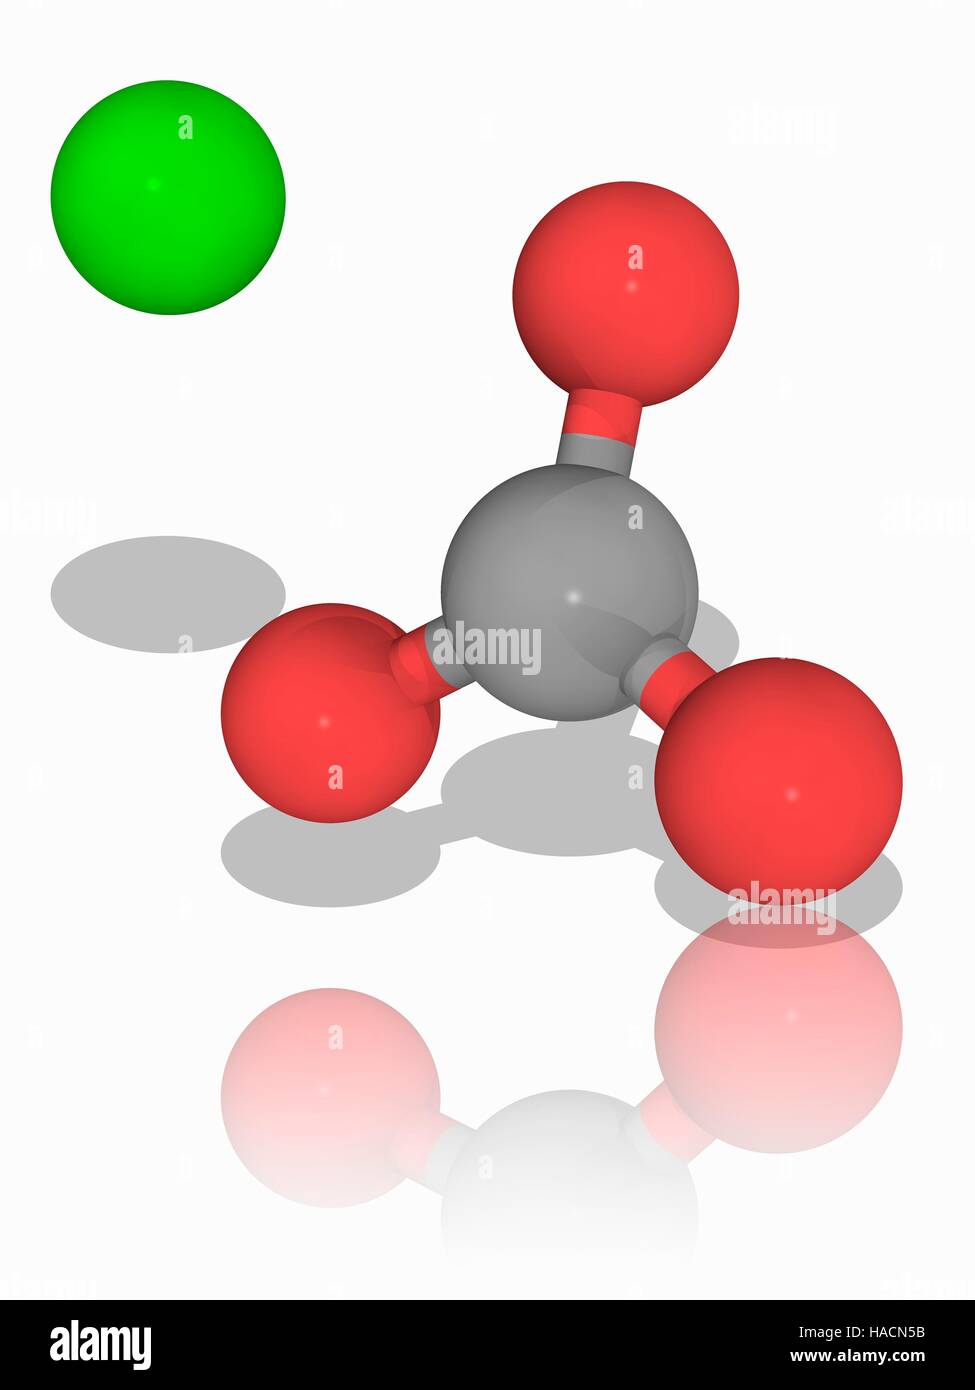 El carbonato de calcio. Modelo molecular de los minerales iónicos carbonato de calcio (Ca.CO3). Esta sustancia química, constituye el principal componente de las conchas de los organismos marinos y las cáscaras de huevo, y es un mineral abundante depósito que se formó bajo los mares antiguos. Los átomos y los iones son representados como esferas y están codificados por color: calcio (verde), el carbono (gris) y oxígeno (rojo). Los iones de calcio y los iones de carbonato tiene una doble carga positiva y negativa, respectivamente. Ilustración. Foto de stock